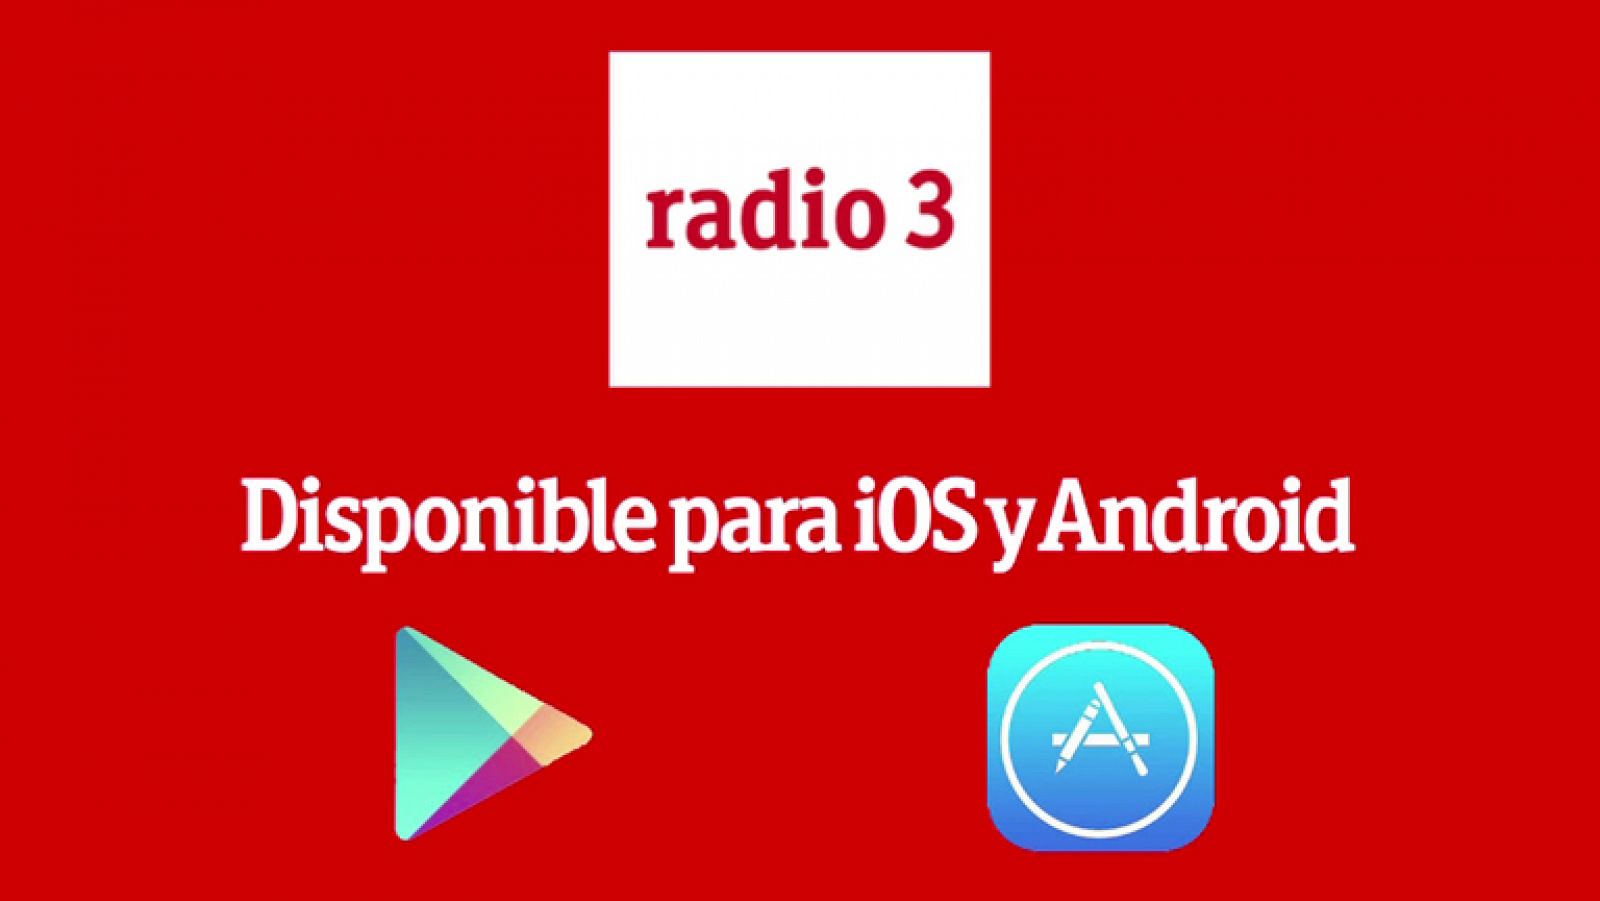 Aplicación de Radio 3 para iOS y Android - 17/10/2013